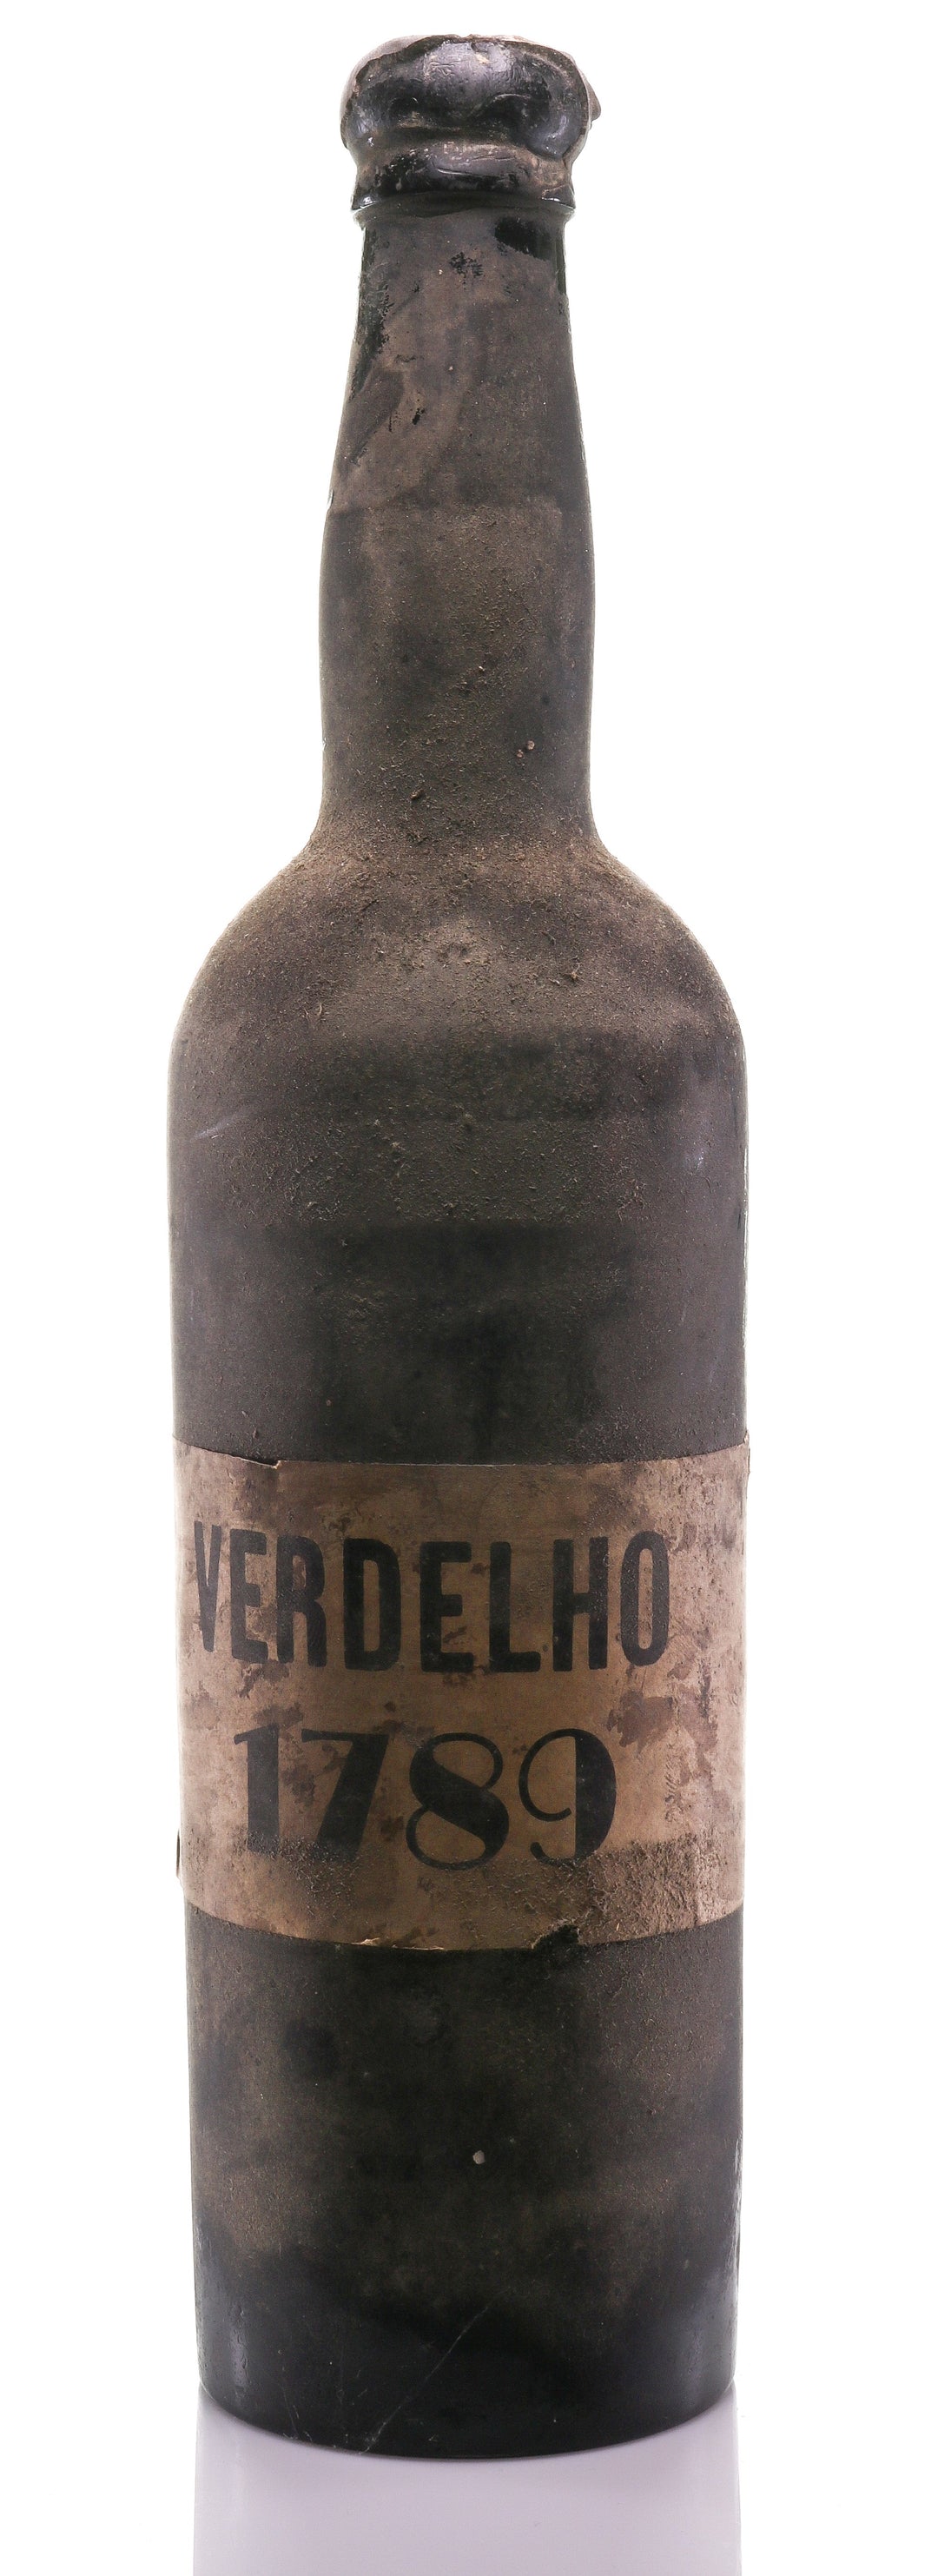 Madeira 1789 Verdelho - legendaryvintages